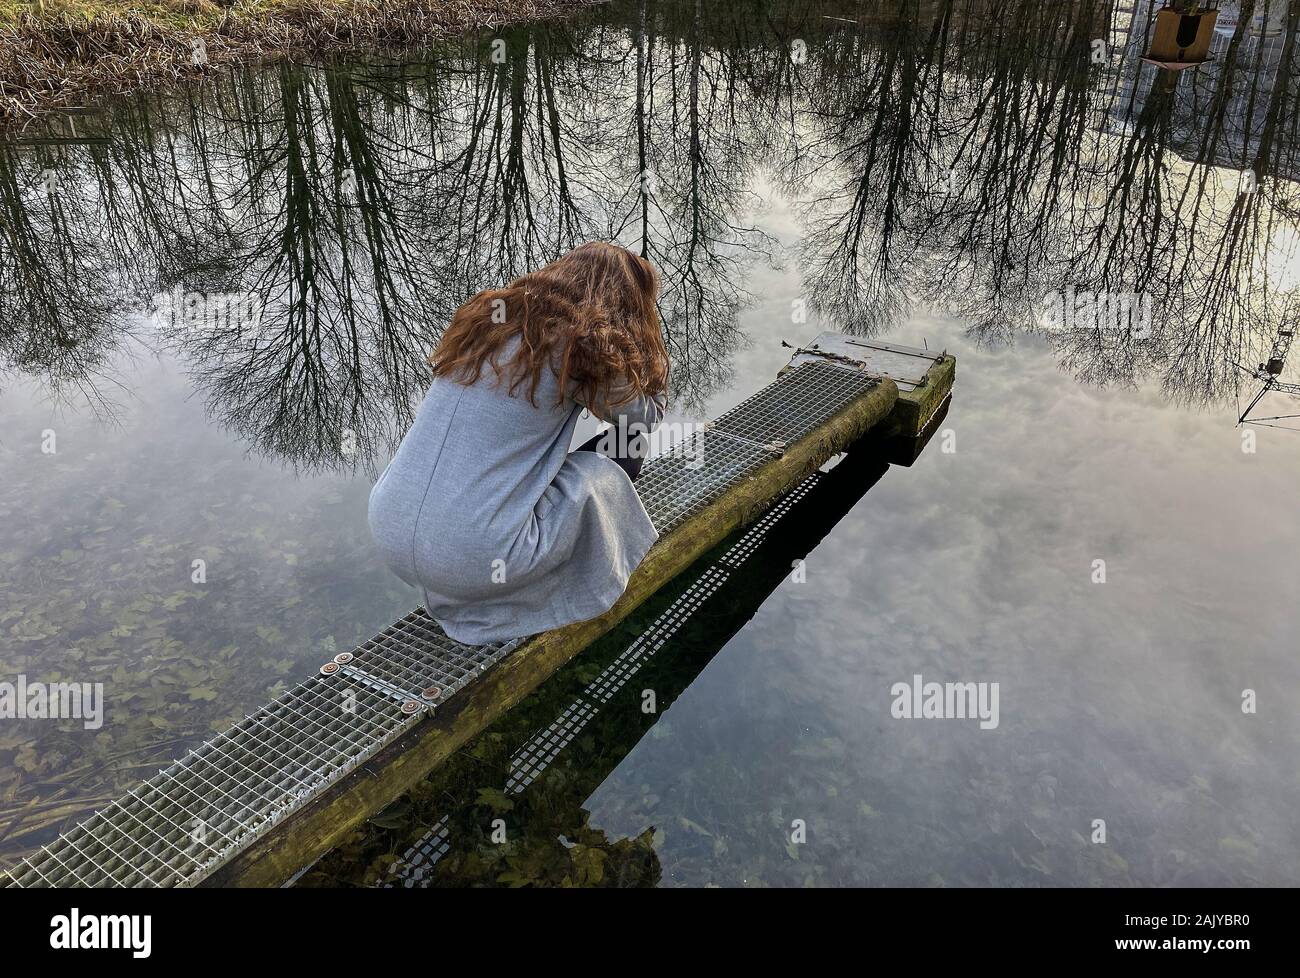 A woman in depressive situation in Kaufbeuren, Germany, December 31, 2019. © Peter Schatz / Alamy Stock Photos Stock Photo